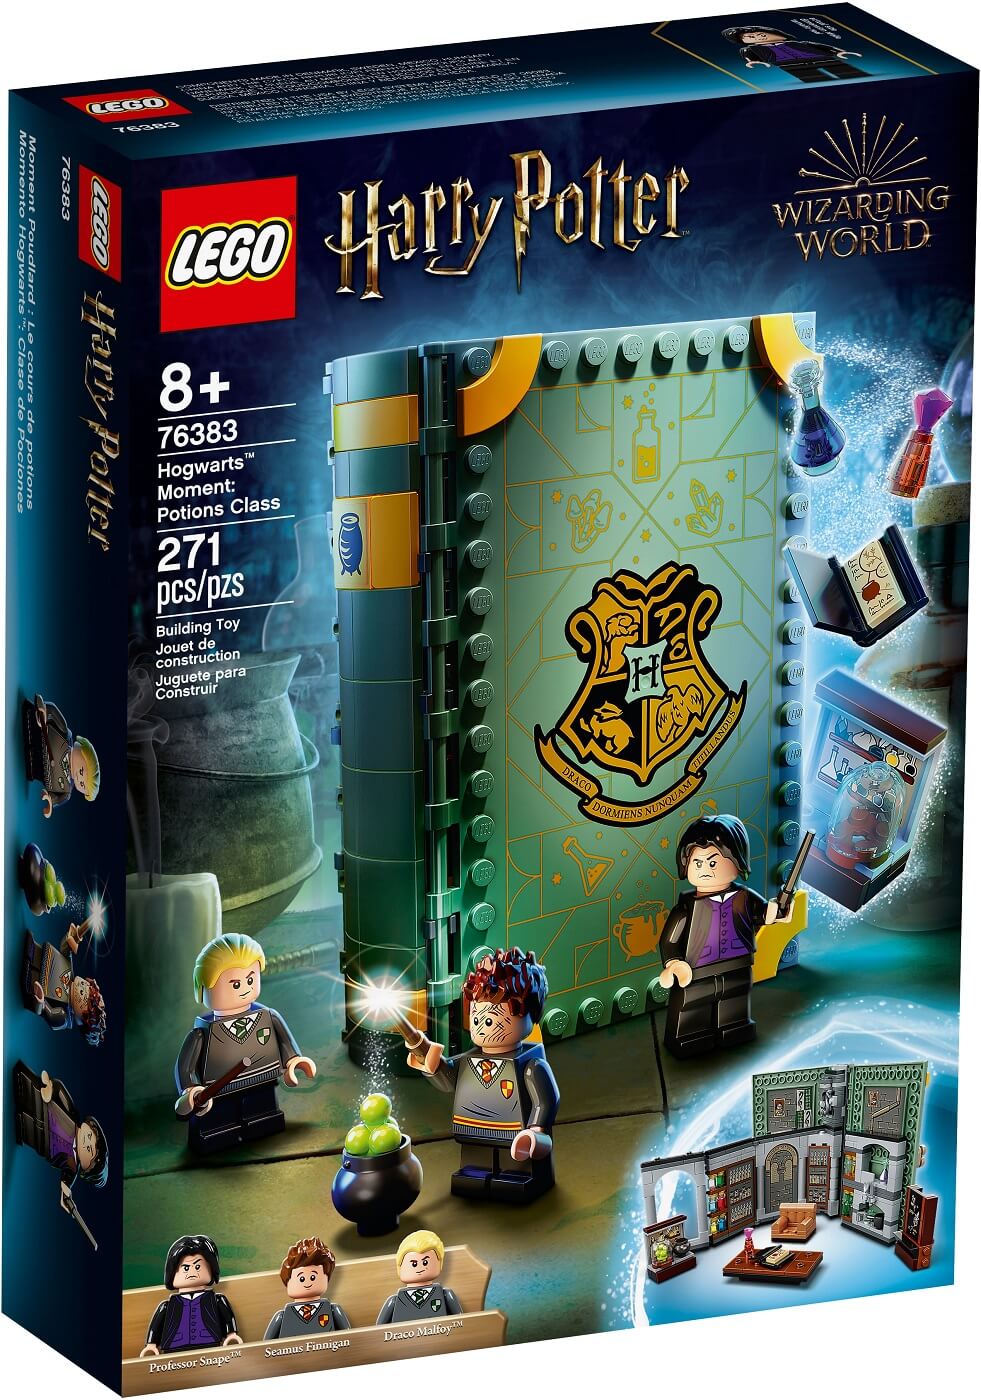 Momento Hogwarts Clase de Pociones ( Lego 76383 ) imagen j